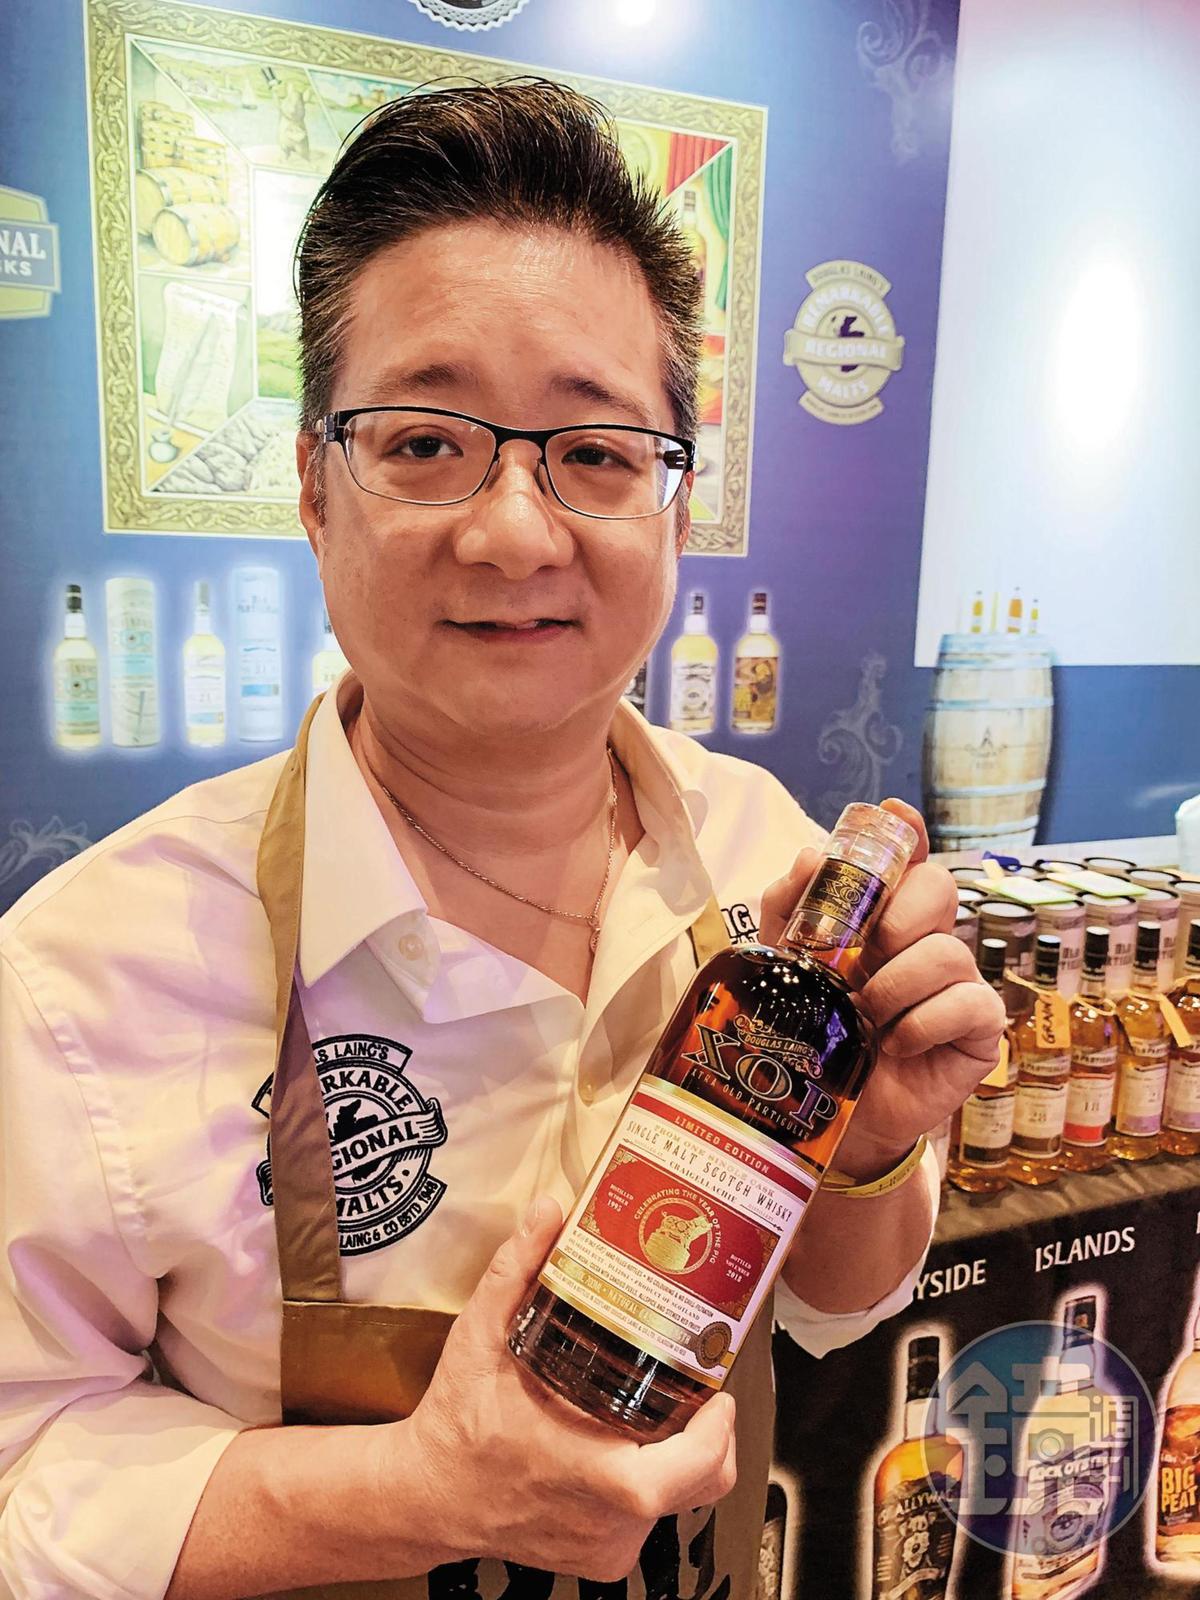 太保07：獨立裝瓶道格拉斯梁的亞洲代表汪政廷（Paul），推薦豬年的魁列奇XOP，1995年蒸餾、2018年裝瓶。